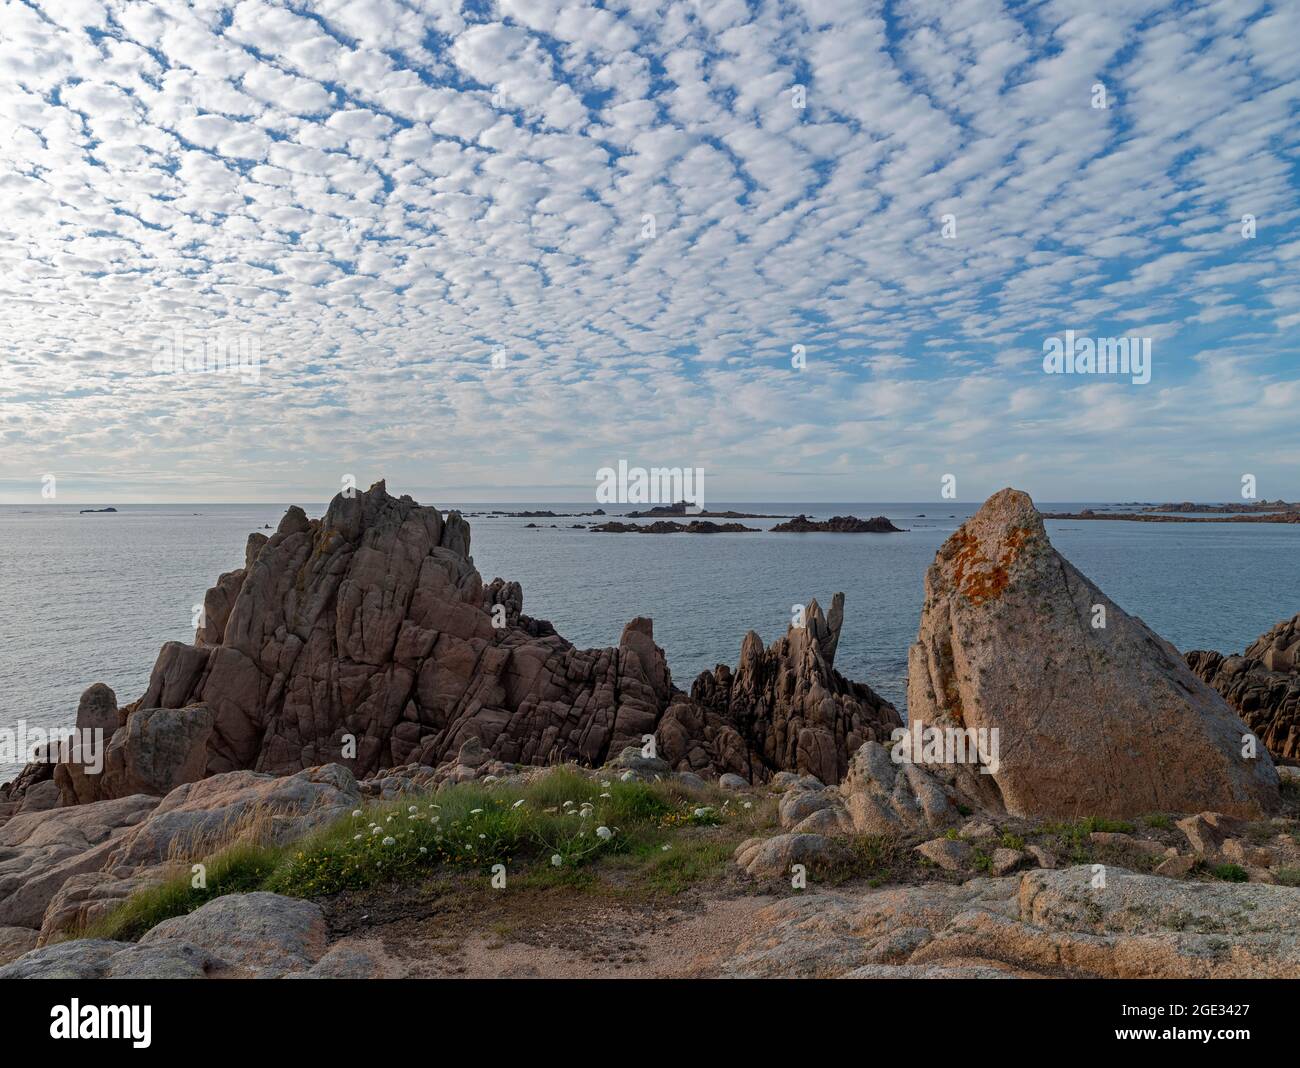 Coastal rocks with a mackerel sky Stock Photo